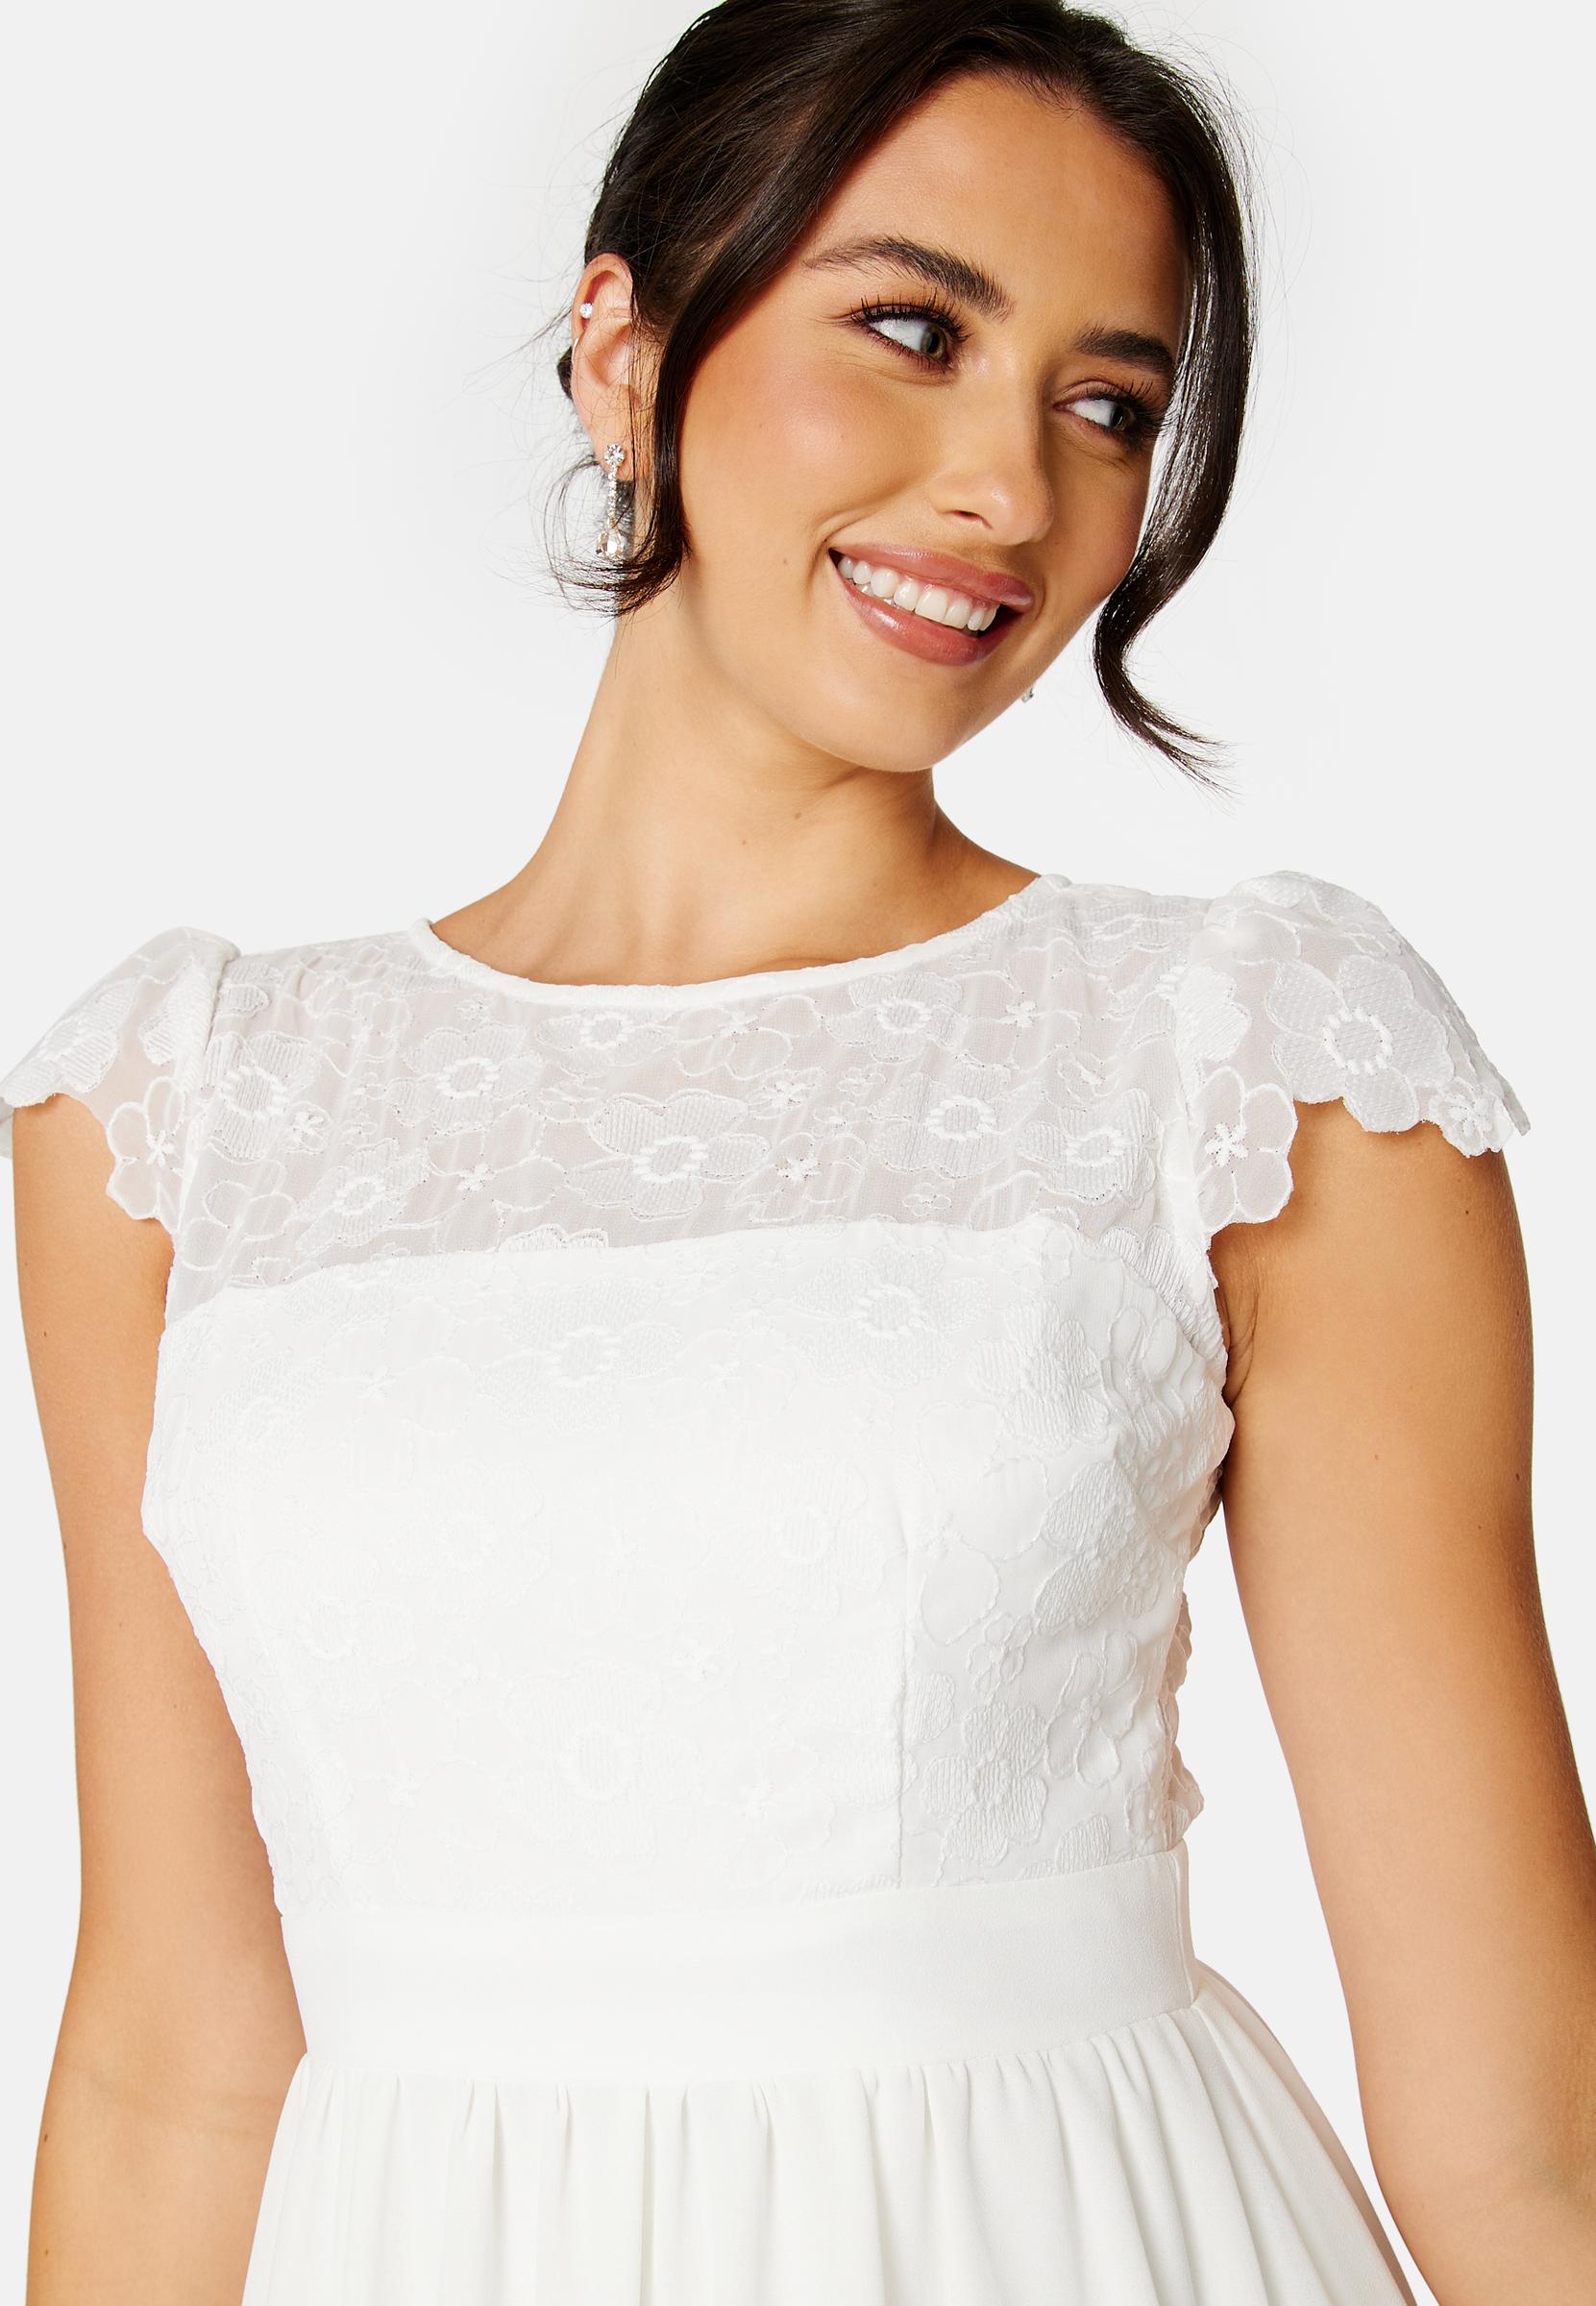 biała suknia ślubna nikolette koronka kwiaty